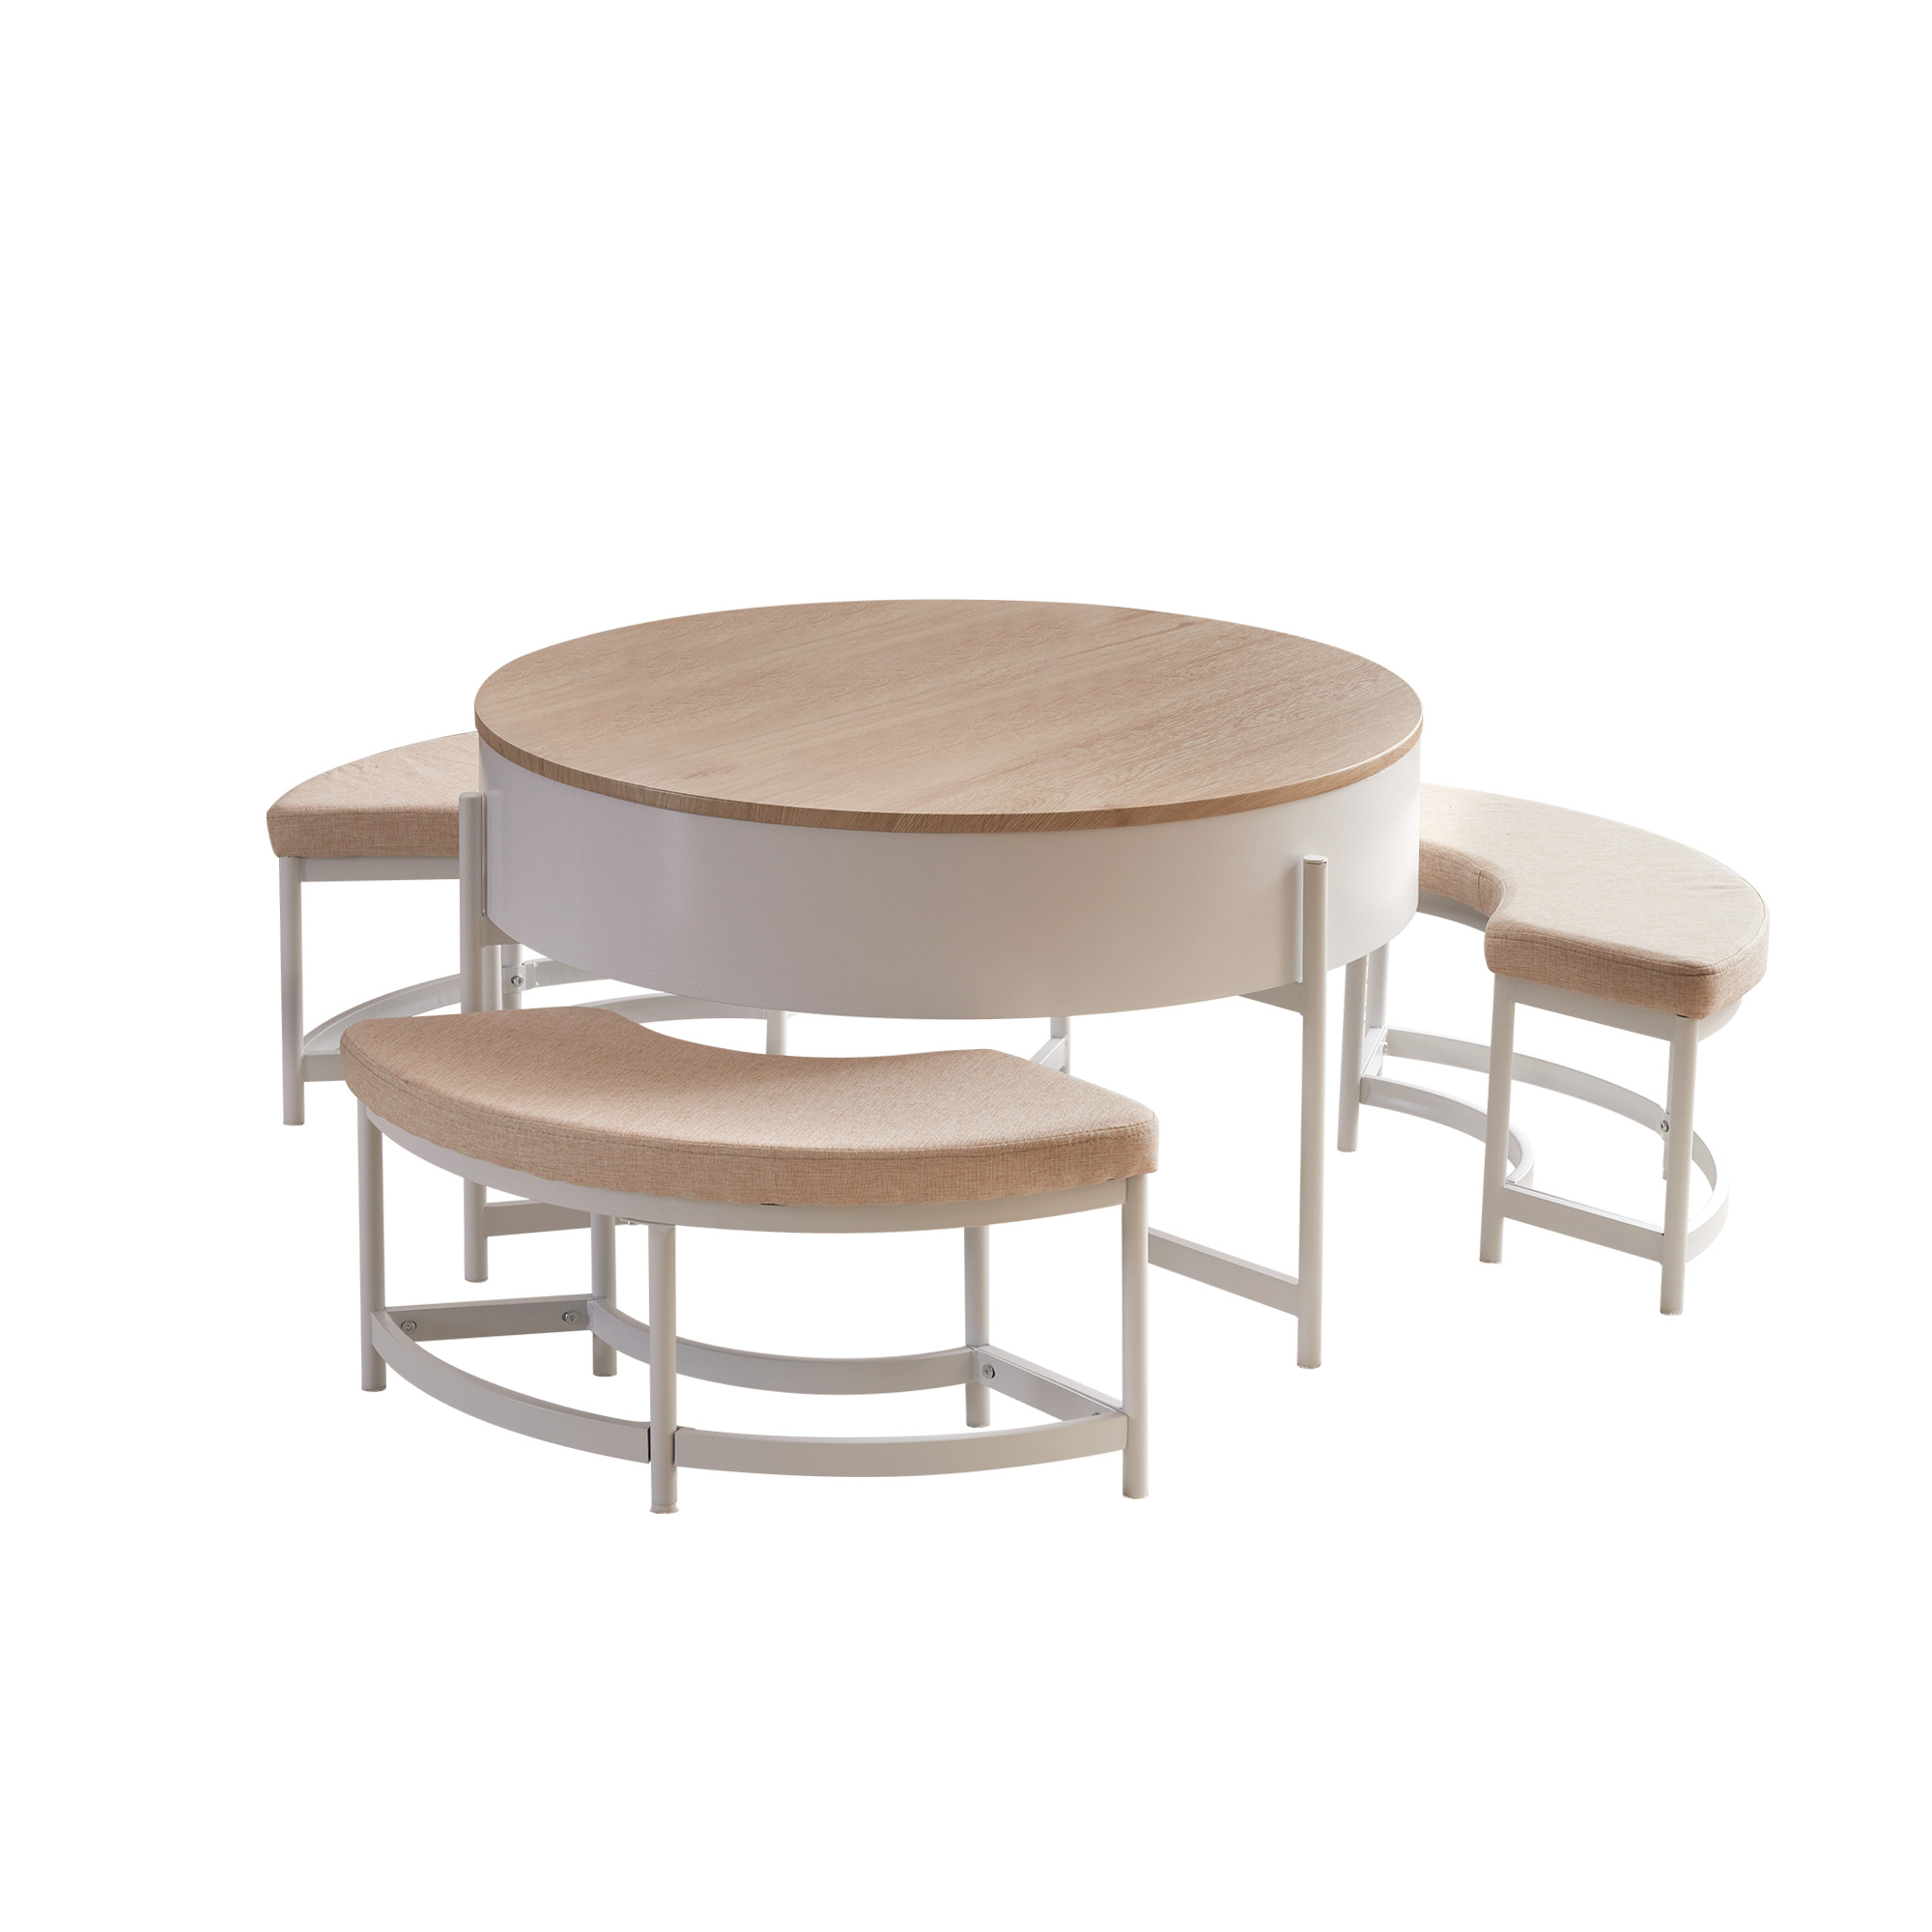 昇降テーブル センターテーブル 丸型 チェア付き 4点セット 3人掛け 収納付き 丸テーブル ダイニングテーブル イス チェア センターテーブルセット  ローテーブル